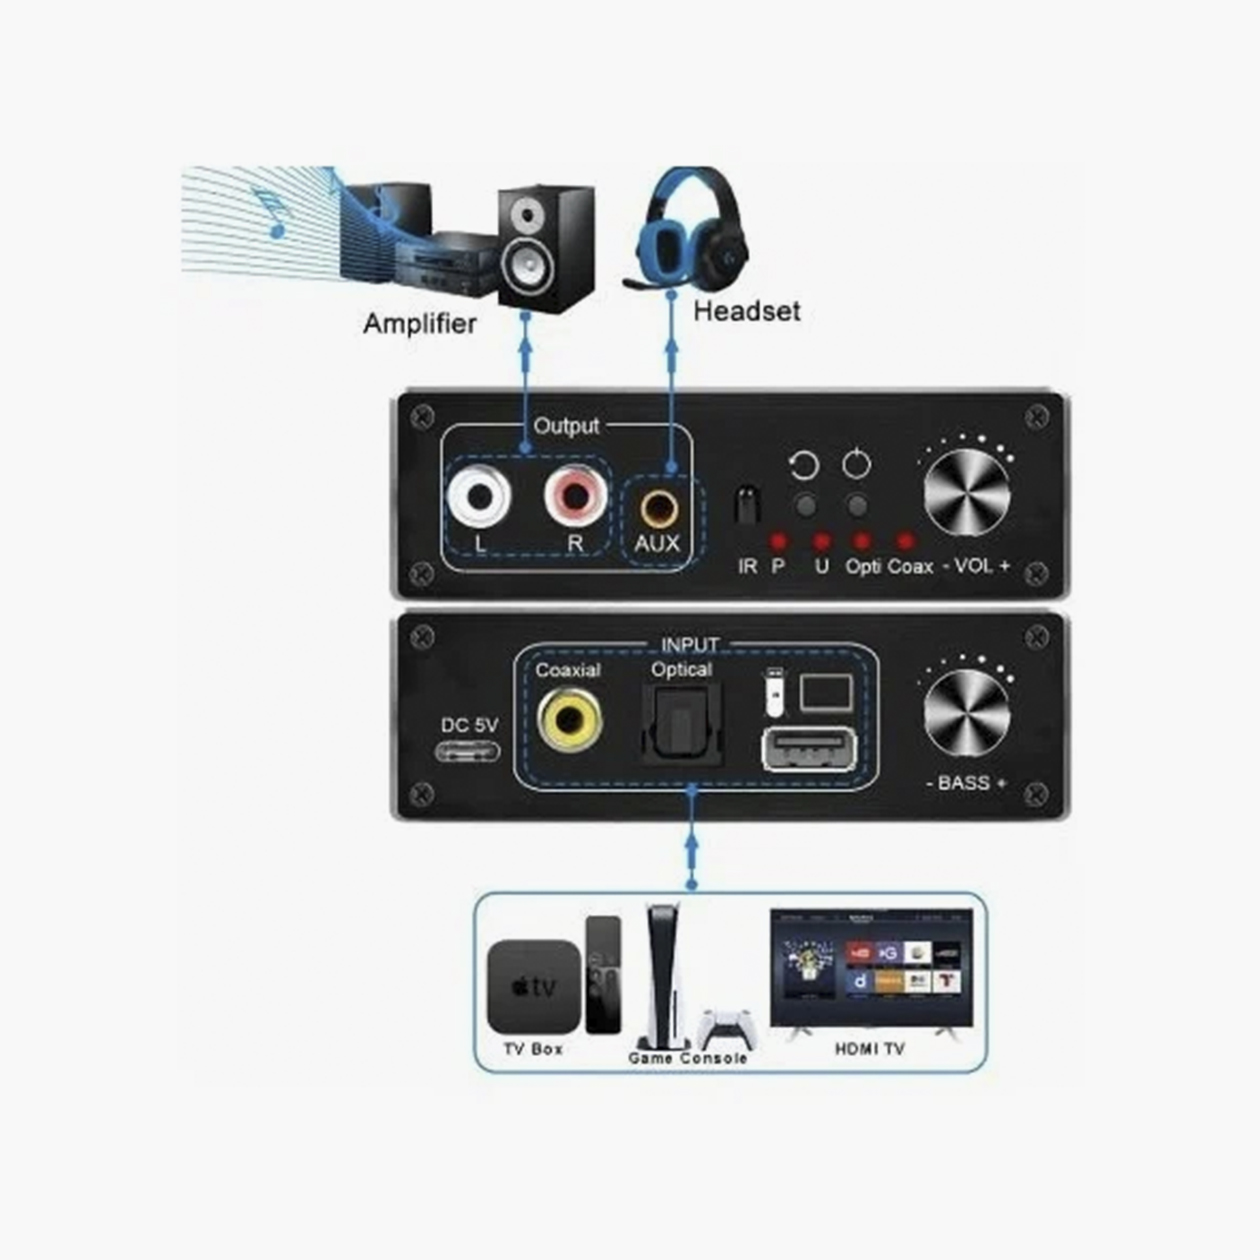 Аудиоконвертер — звук с тюльпана преобразуется и выводится на коаксиальный или оптический кабель. Источник: market.yandex.ru